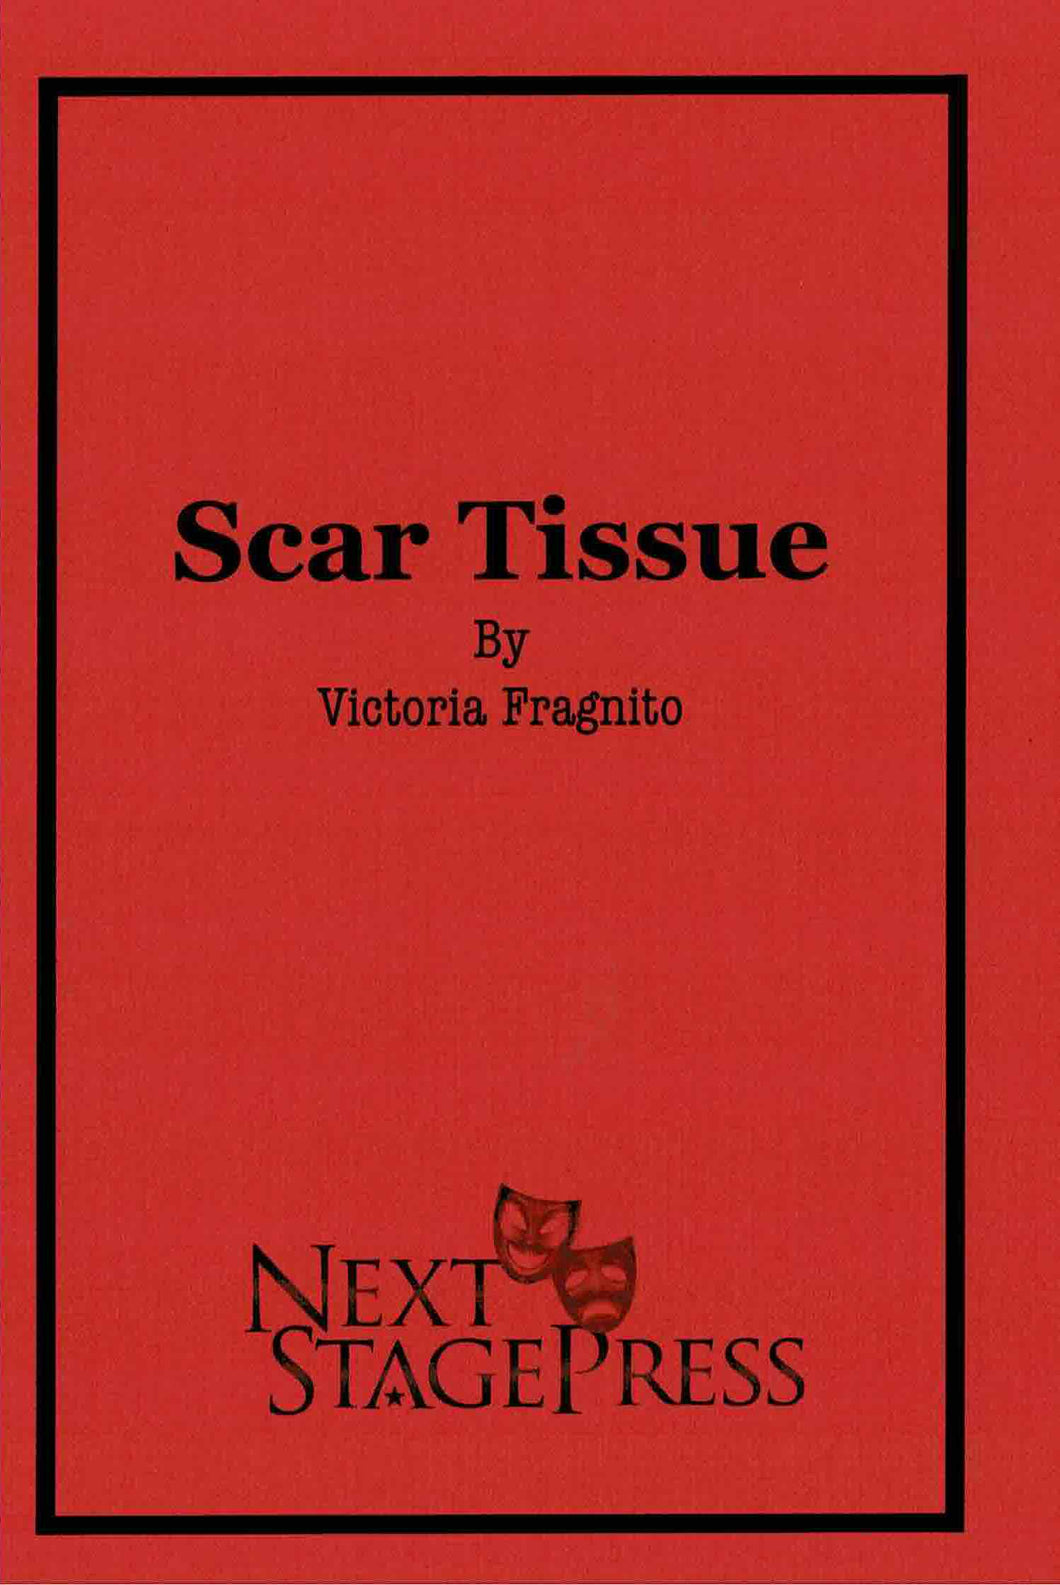 Scar Tissue by Victoria Fragnito